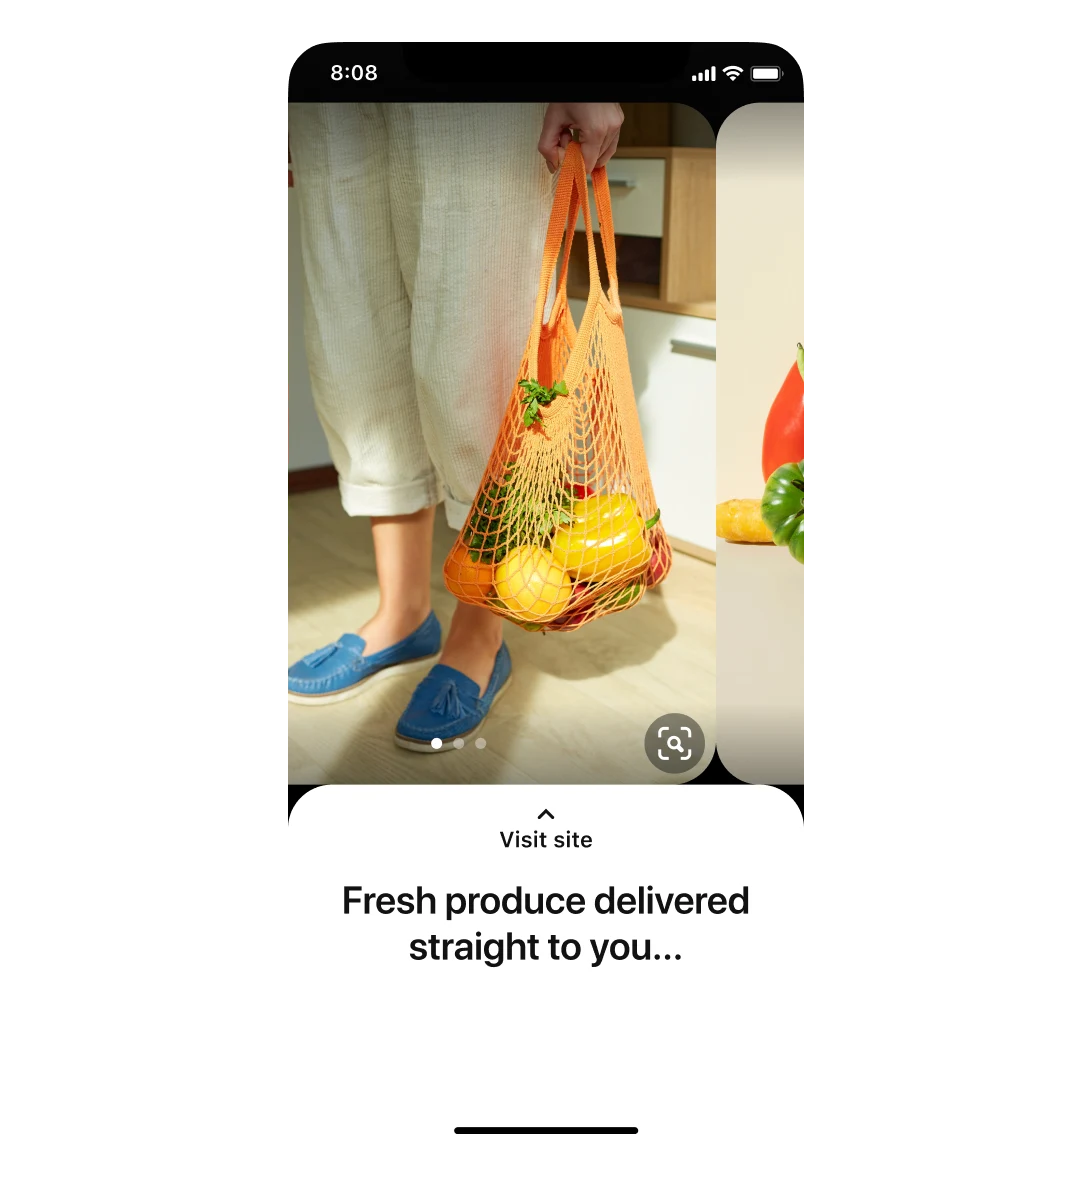 Mobilní zobrazení karuselové reklamy obchodu s potravinami. Na prvním obrázku je člověk, který drží tašku se zbožím. Vpravo vykukuje část druhého obrázku s ovocem a zeleninou. V titulku je nápis:  „Čerstvé produkty přímo pro vás...“